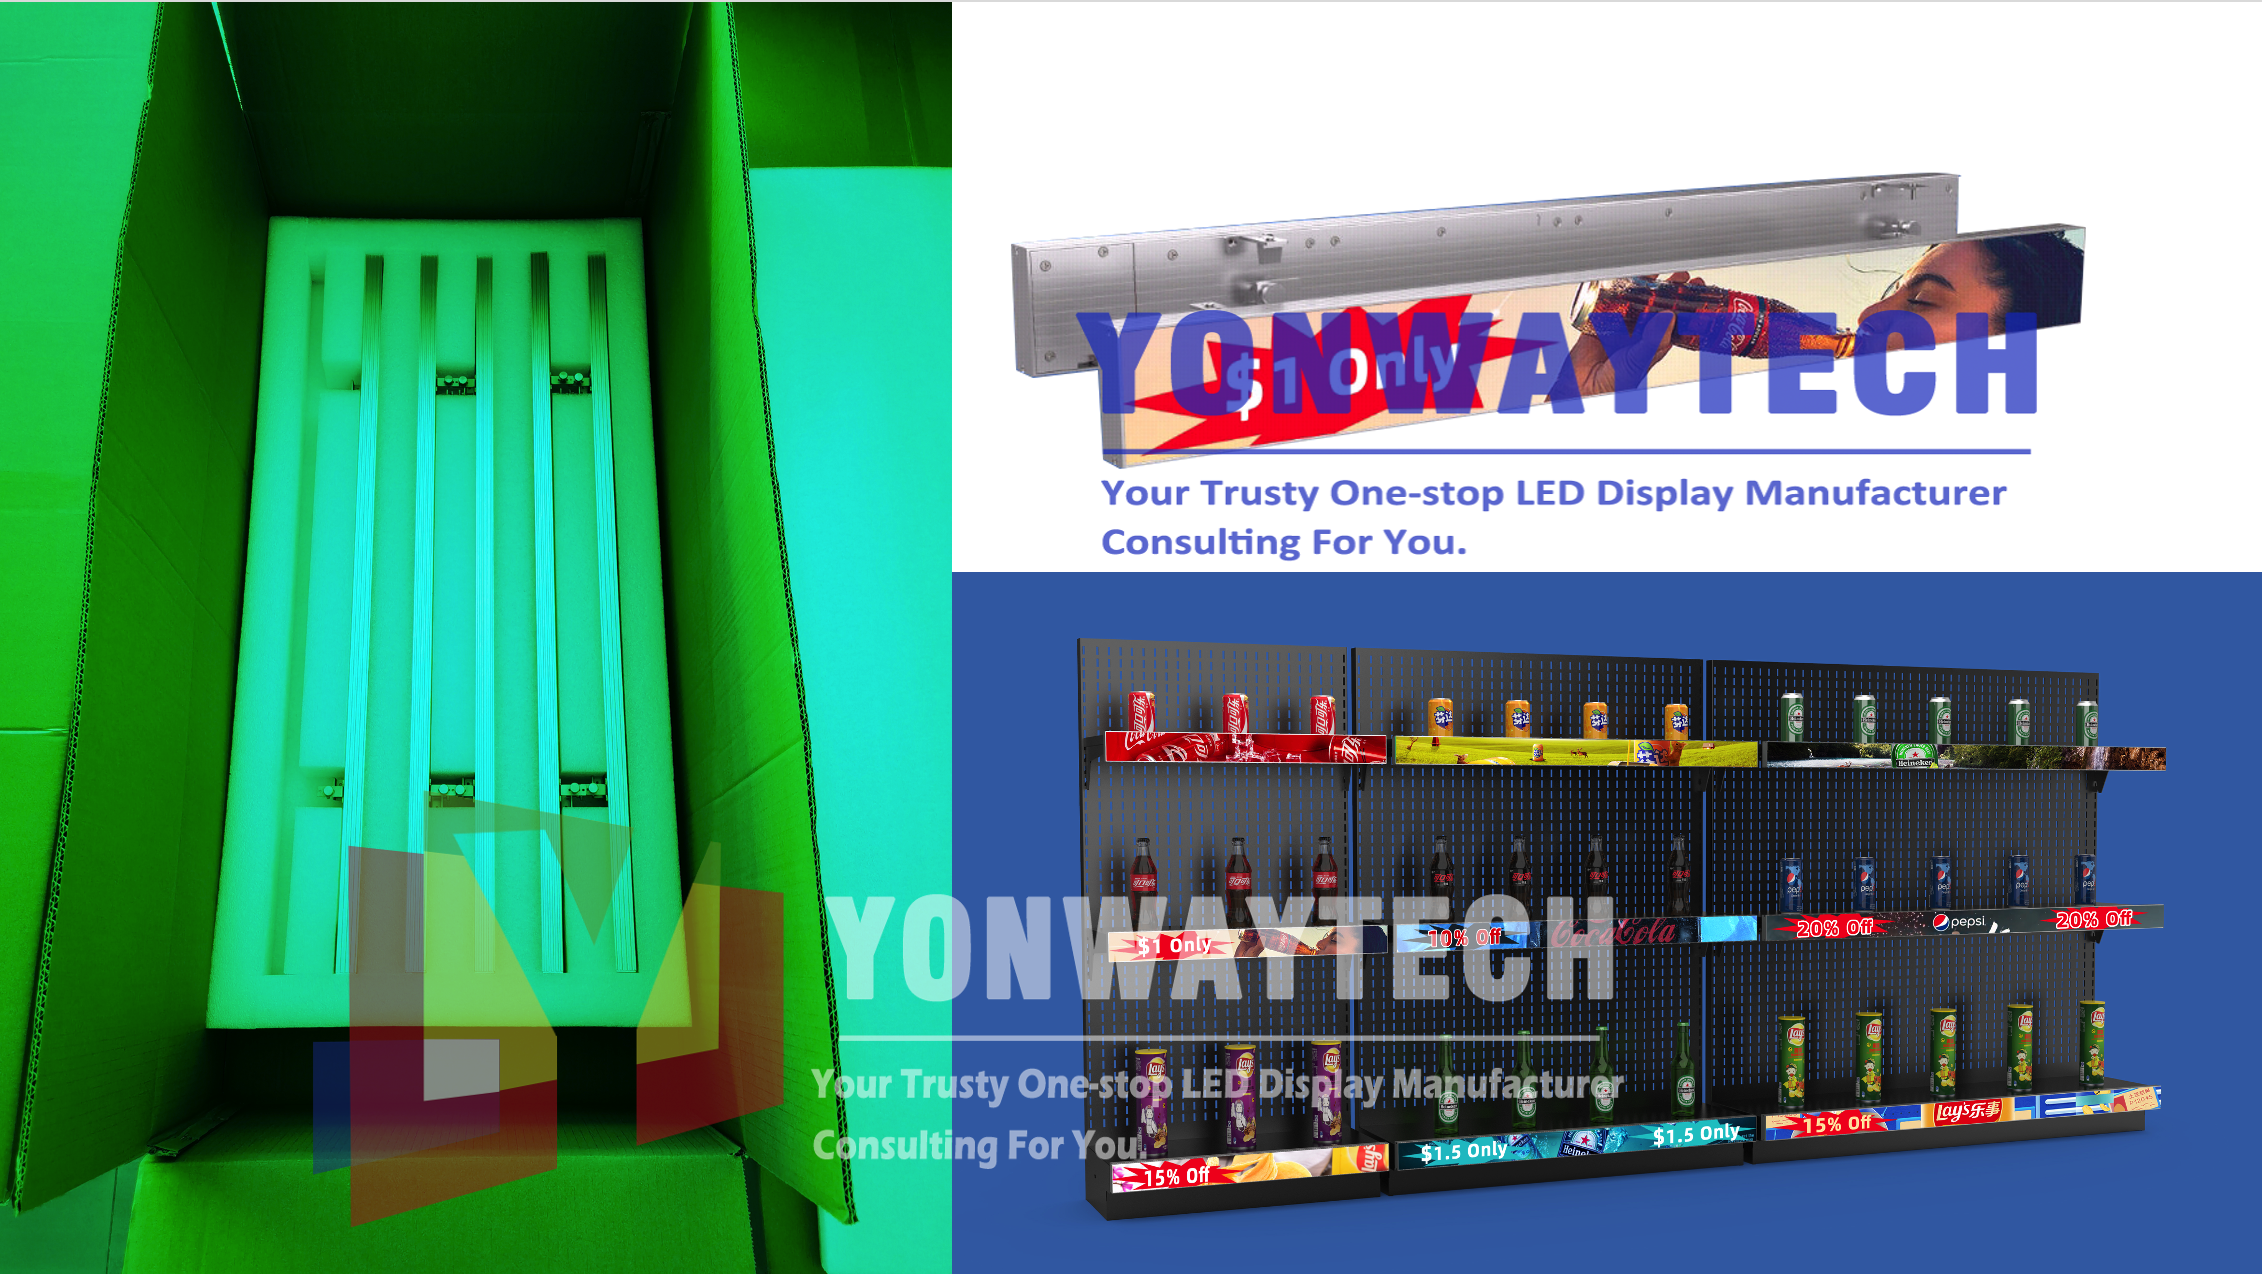 Yonwaytech P1.56 smartshelf gvidita ekrano preza etikedo trinkejo standardo